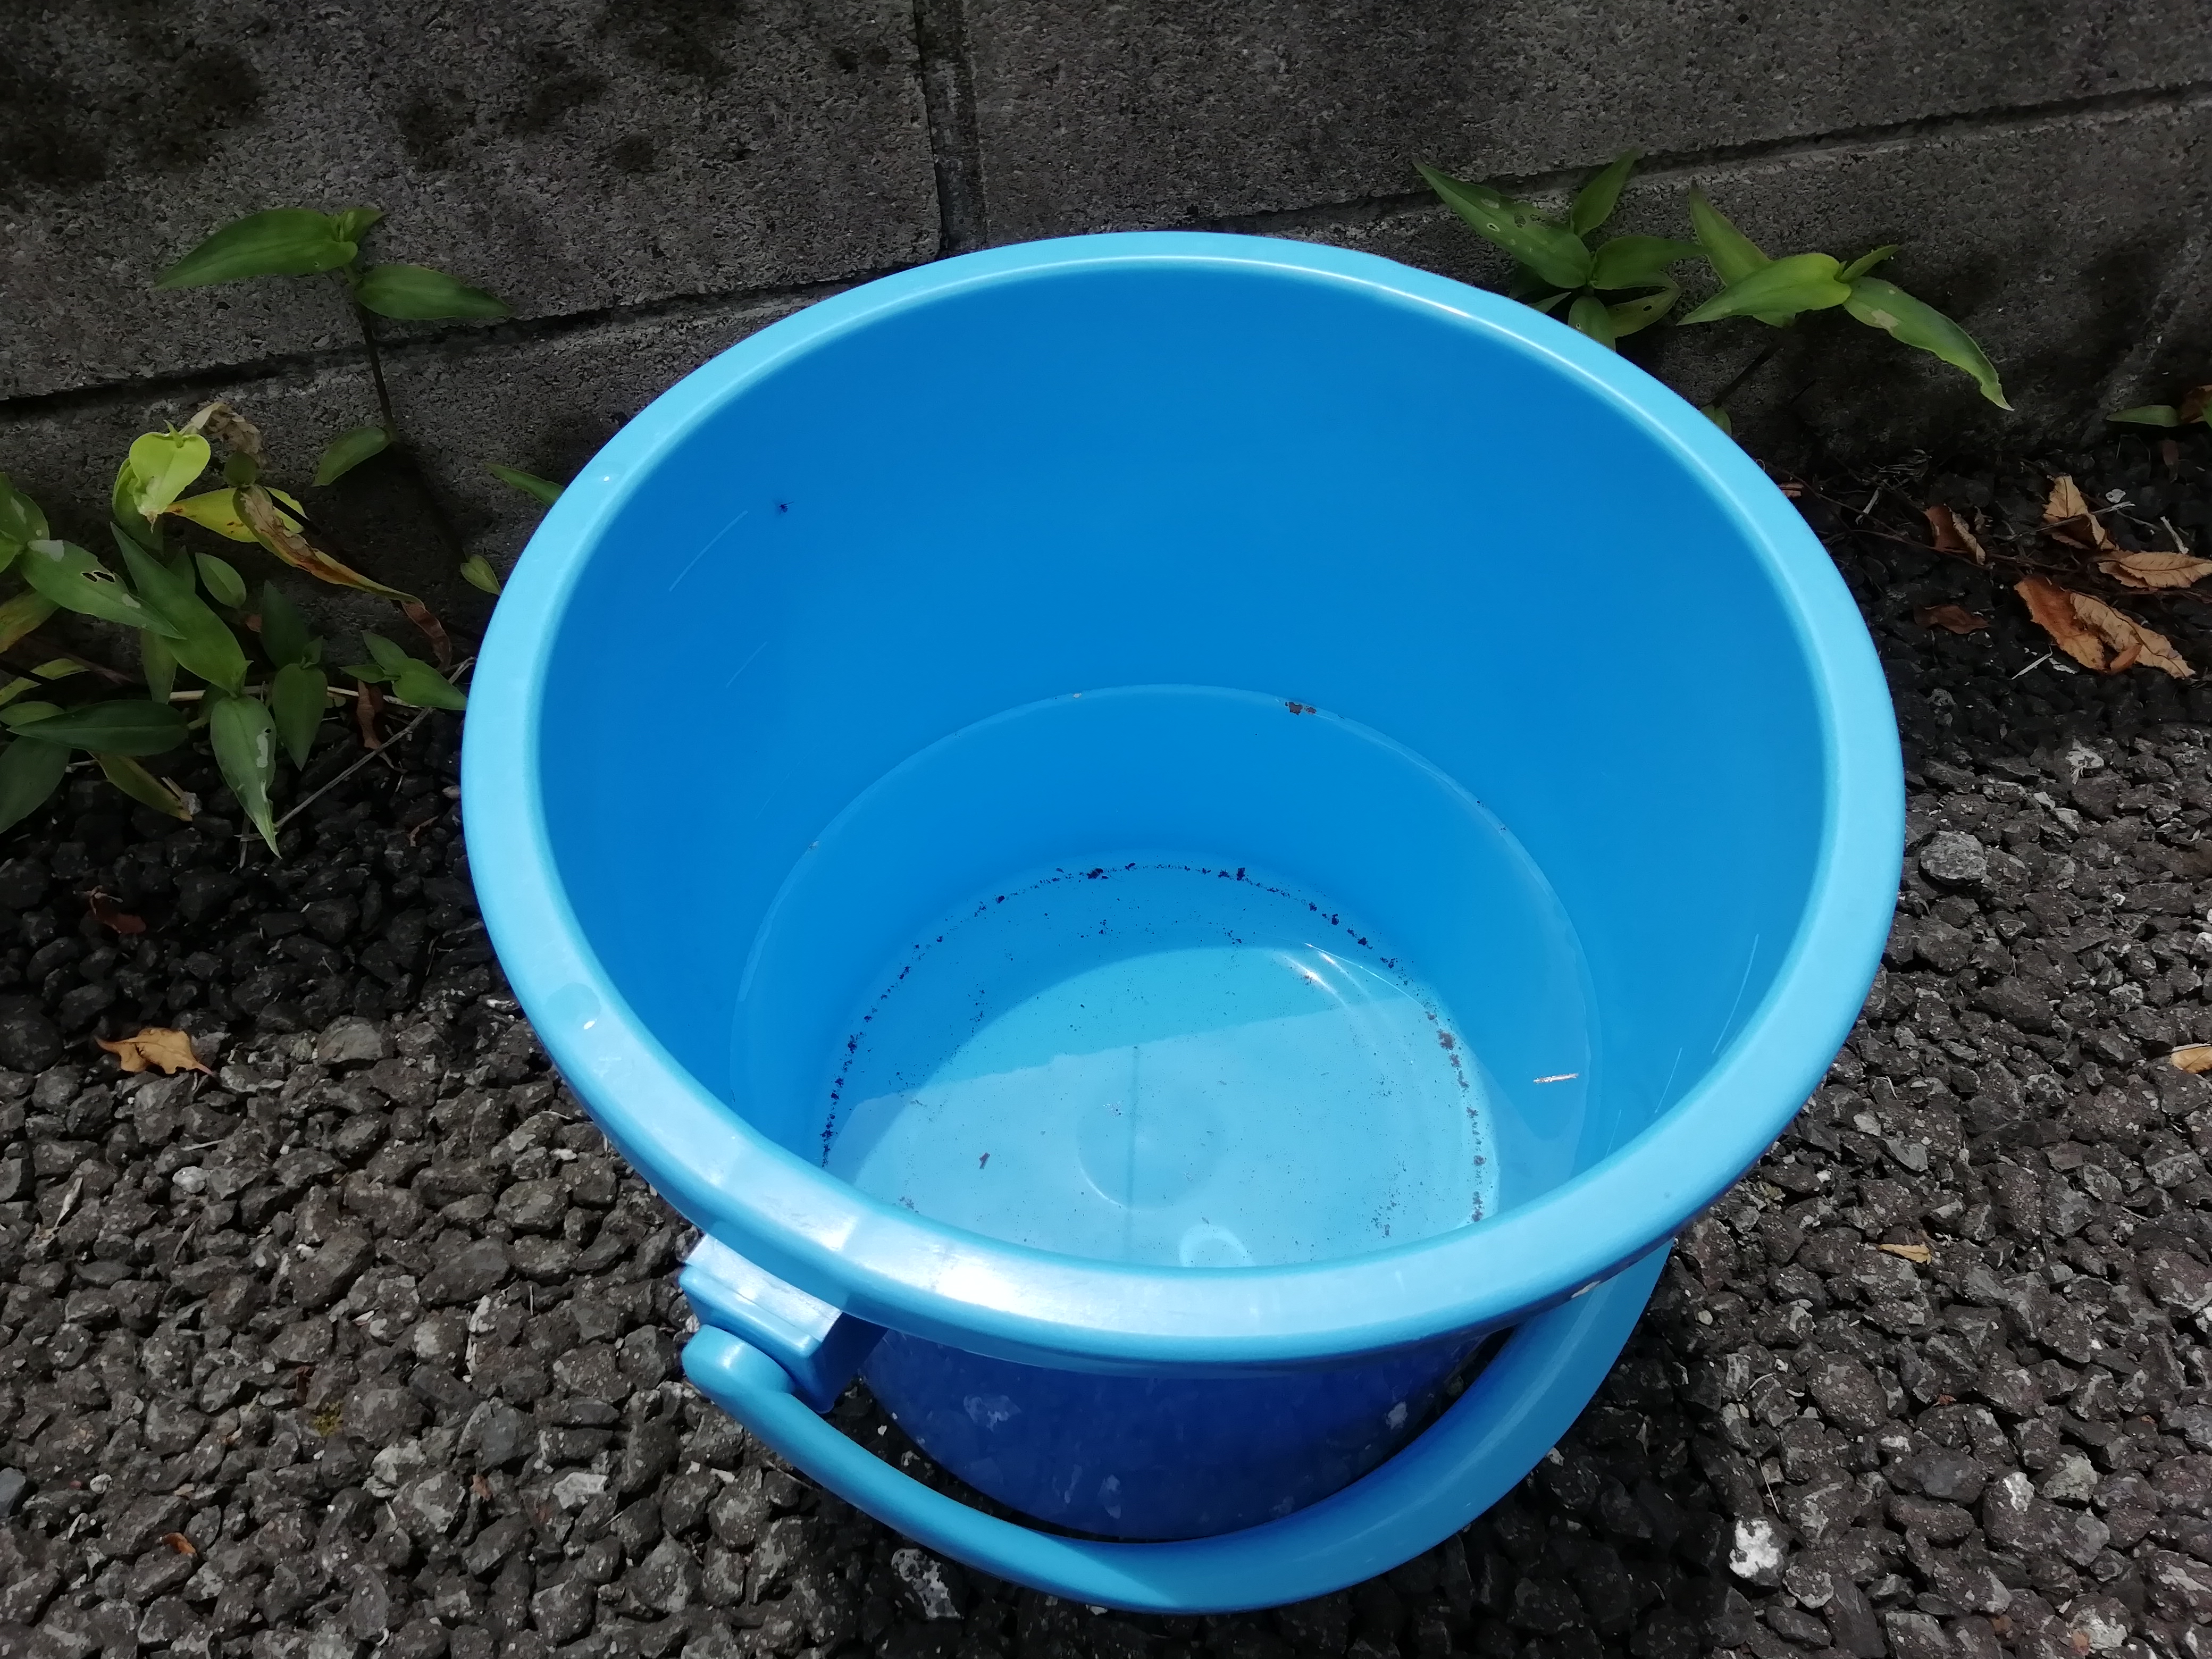 真似するな バケツで雨を集めて鍋で煮詰めたら ちょっとだけ体調が悪くなりました やっぱり東京の大気は汚れているようだ ロケットニュース24